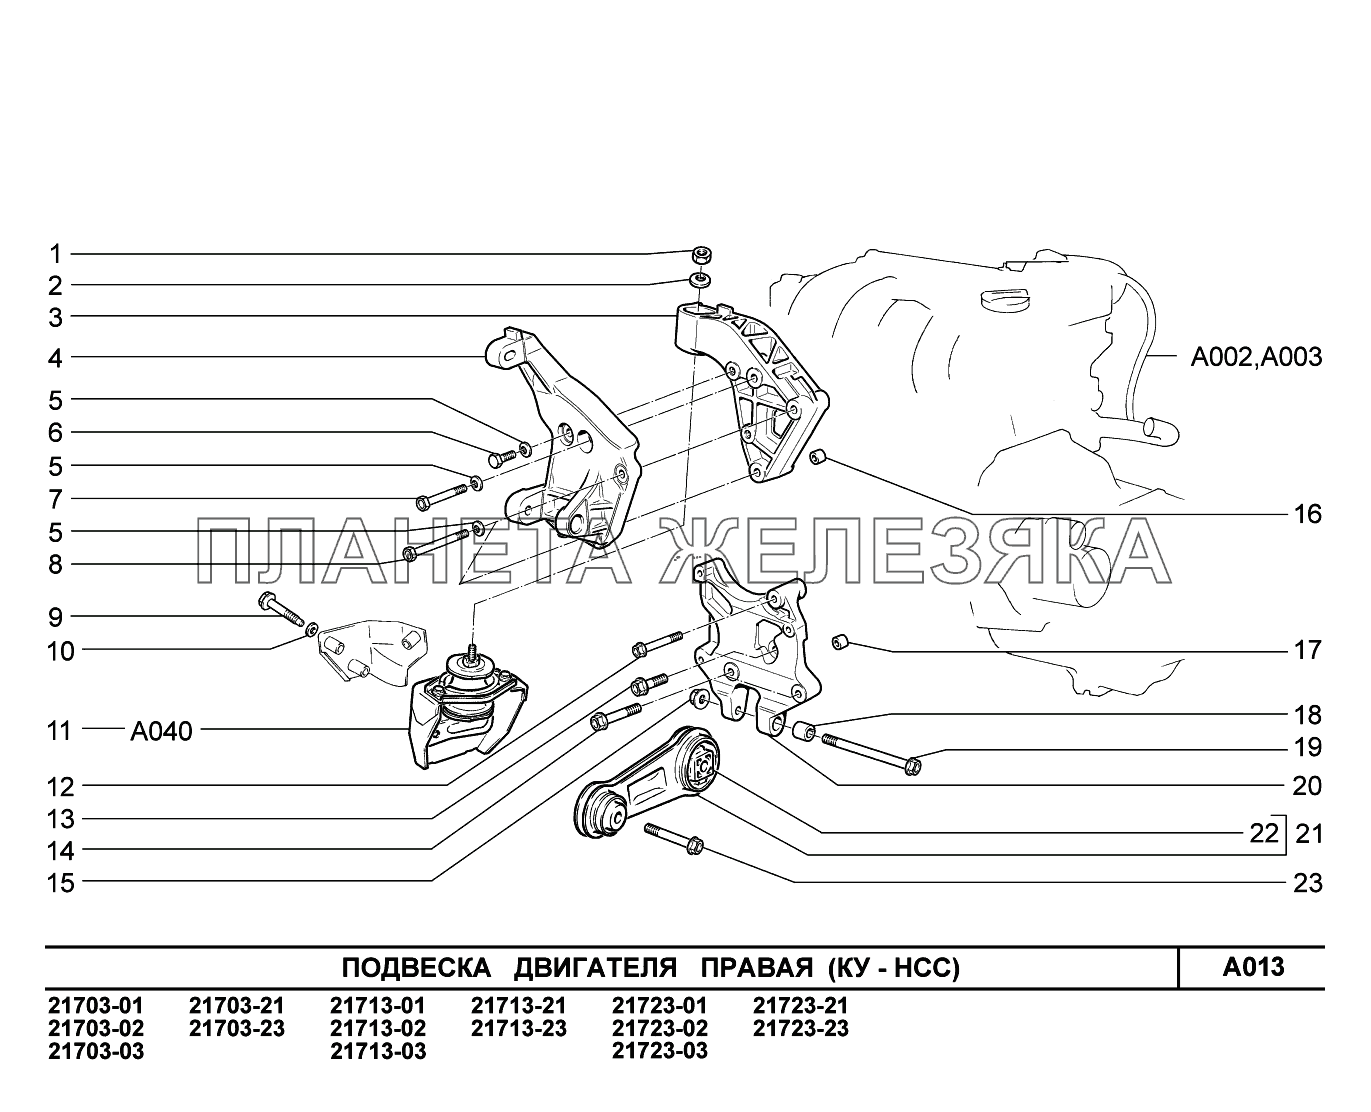 A013. Подвеска двигателя правая ВАЗ-2170 